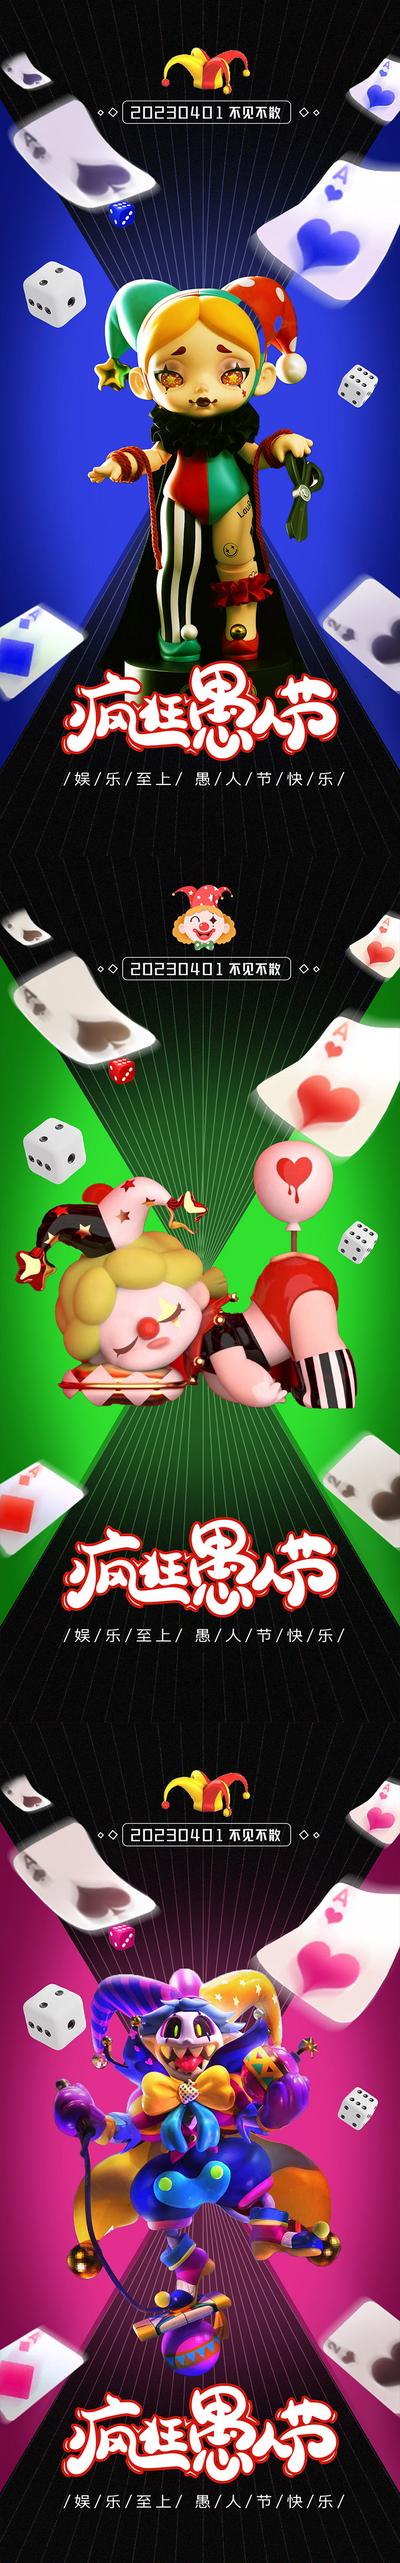 南门网 广告 海波 节日 愚人节 41 小丑 扑克牌 纸牌 系列